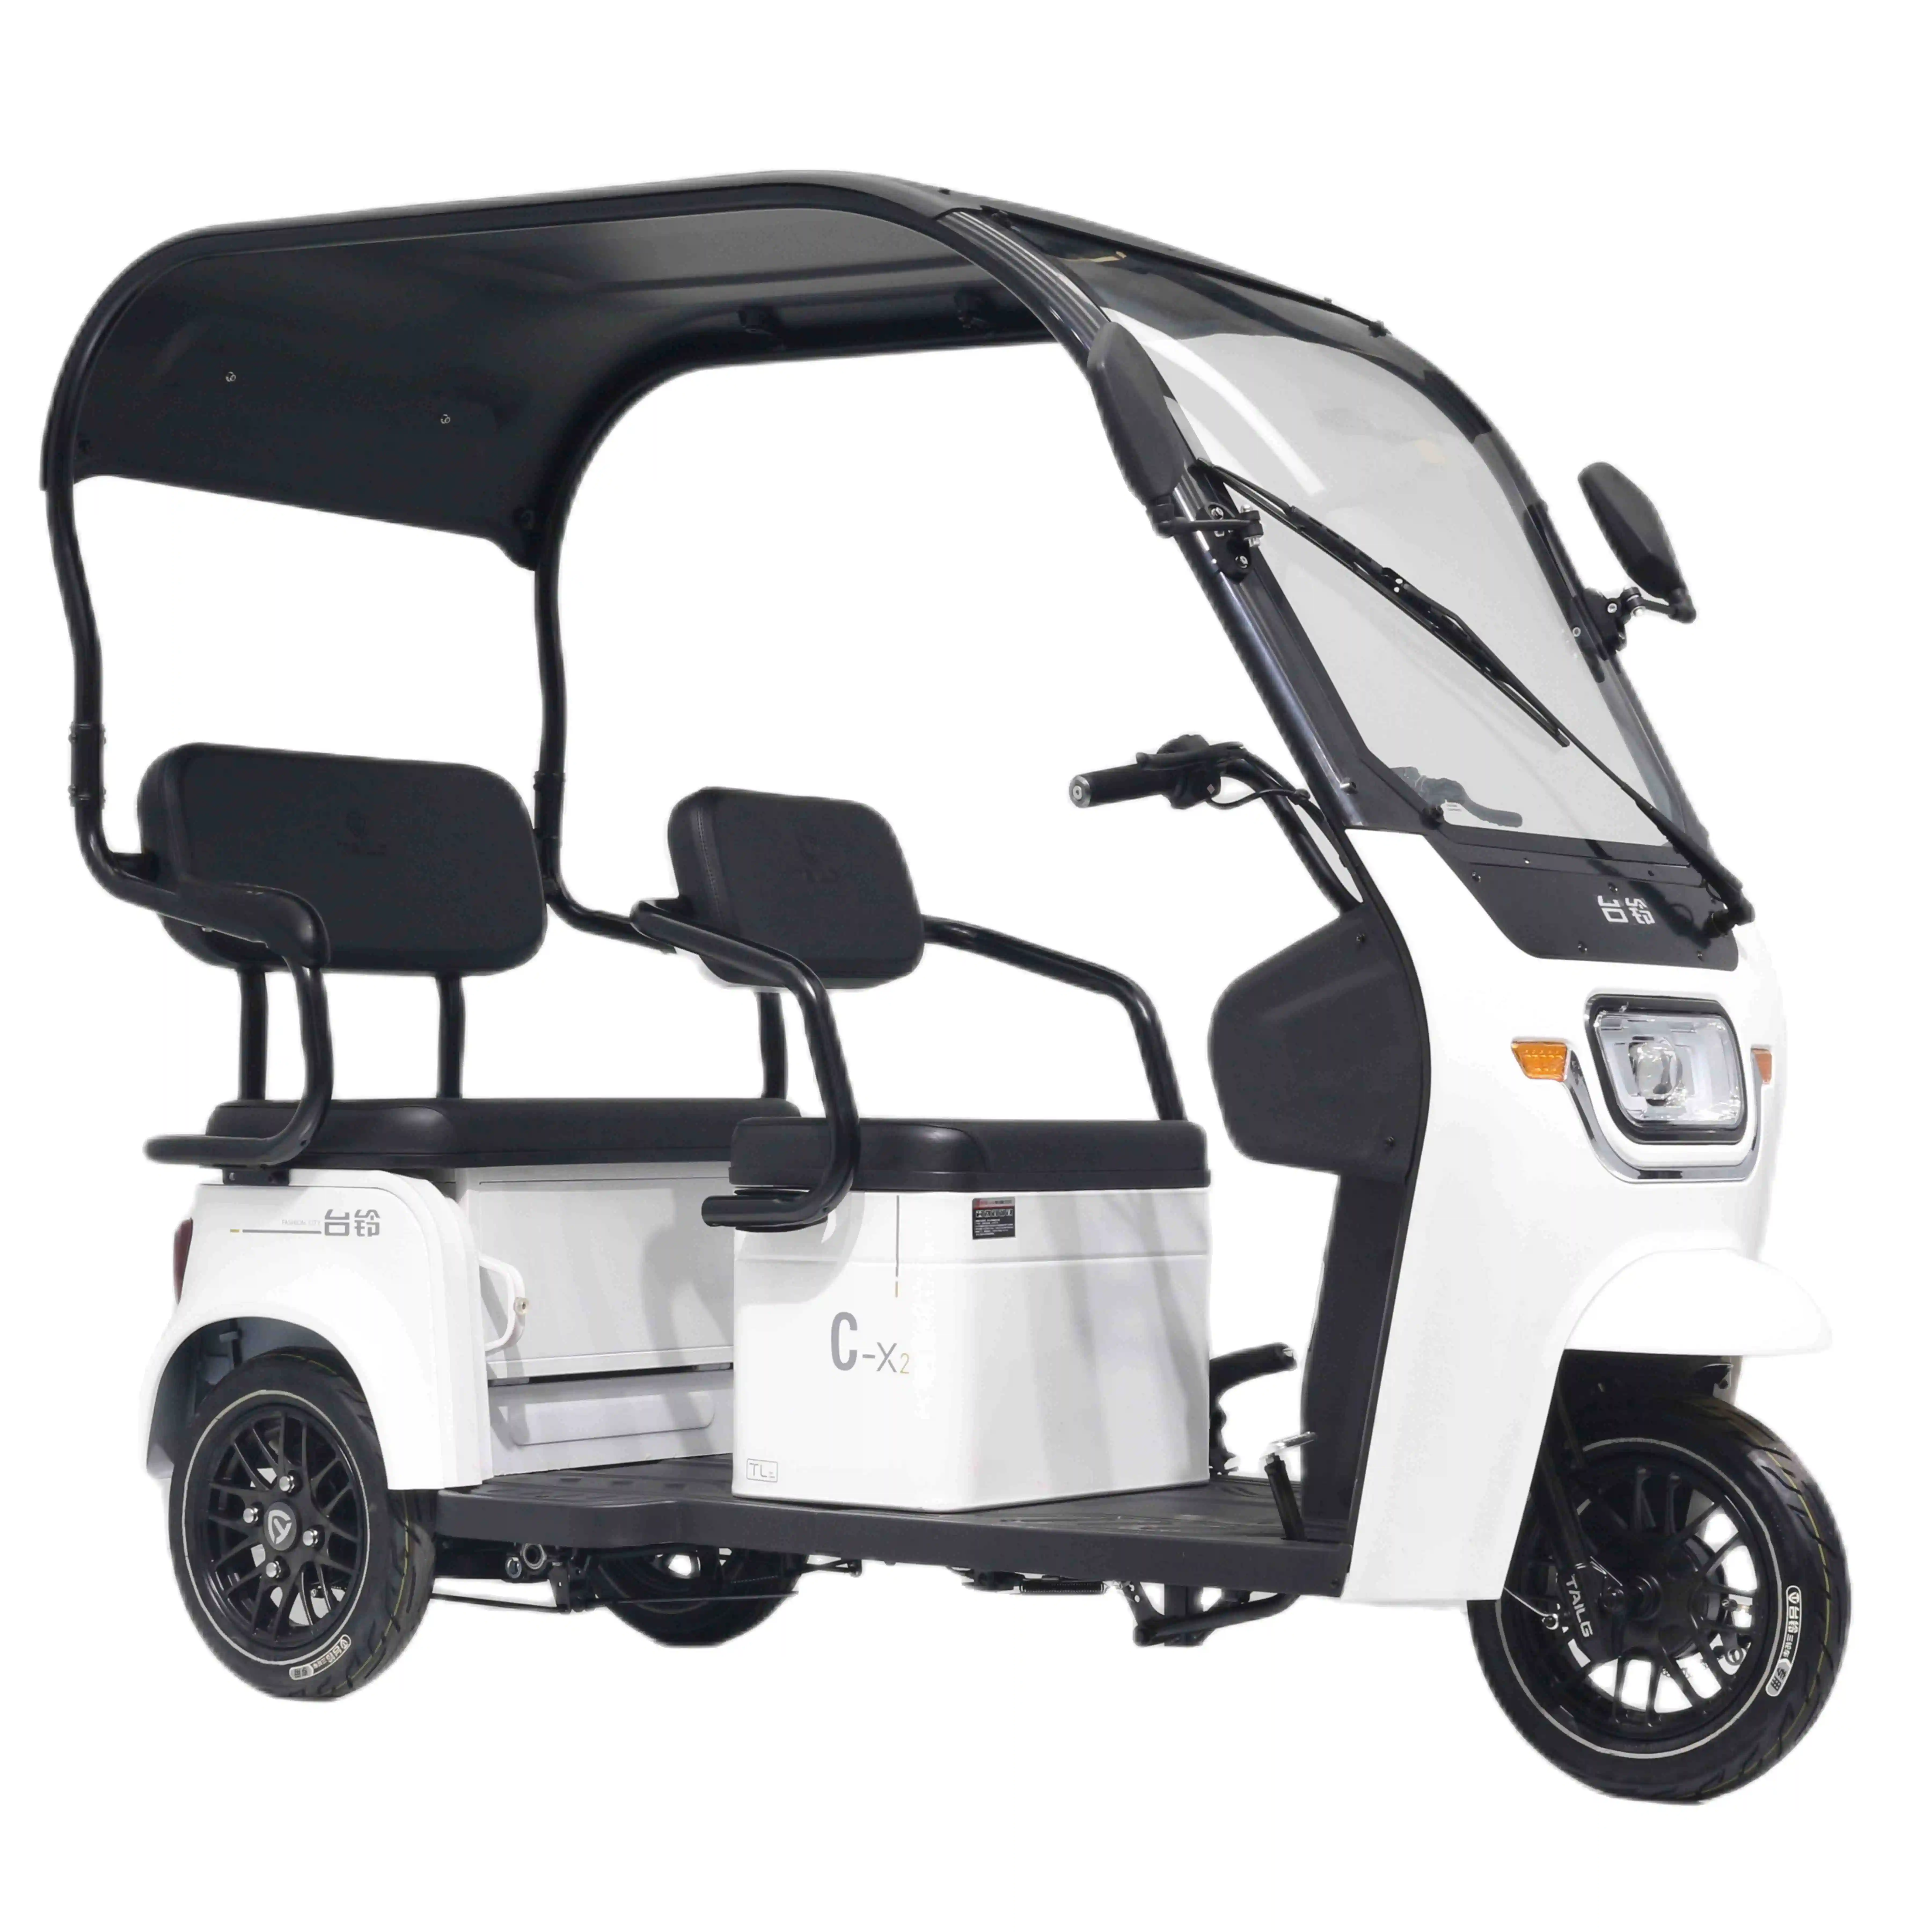 Tailg çin fabrika yolcu yetişkin üç tekerlekli hafif hareketlilik Scooter elektrikli üç tekerlekli bisiklet ile güneşlik